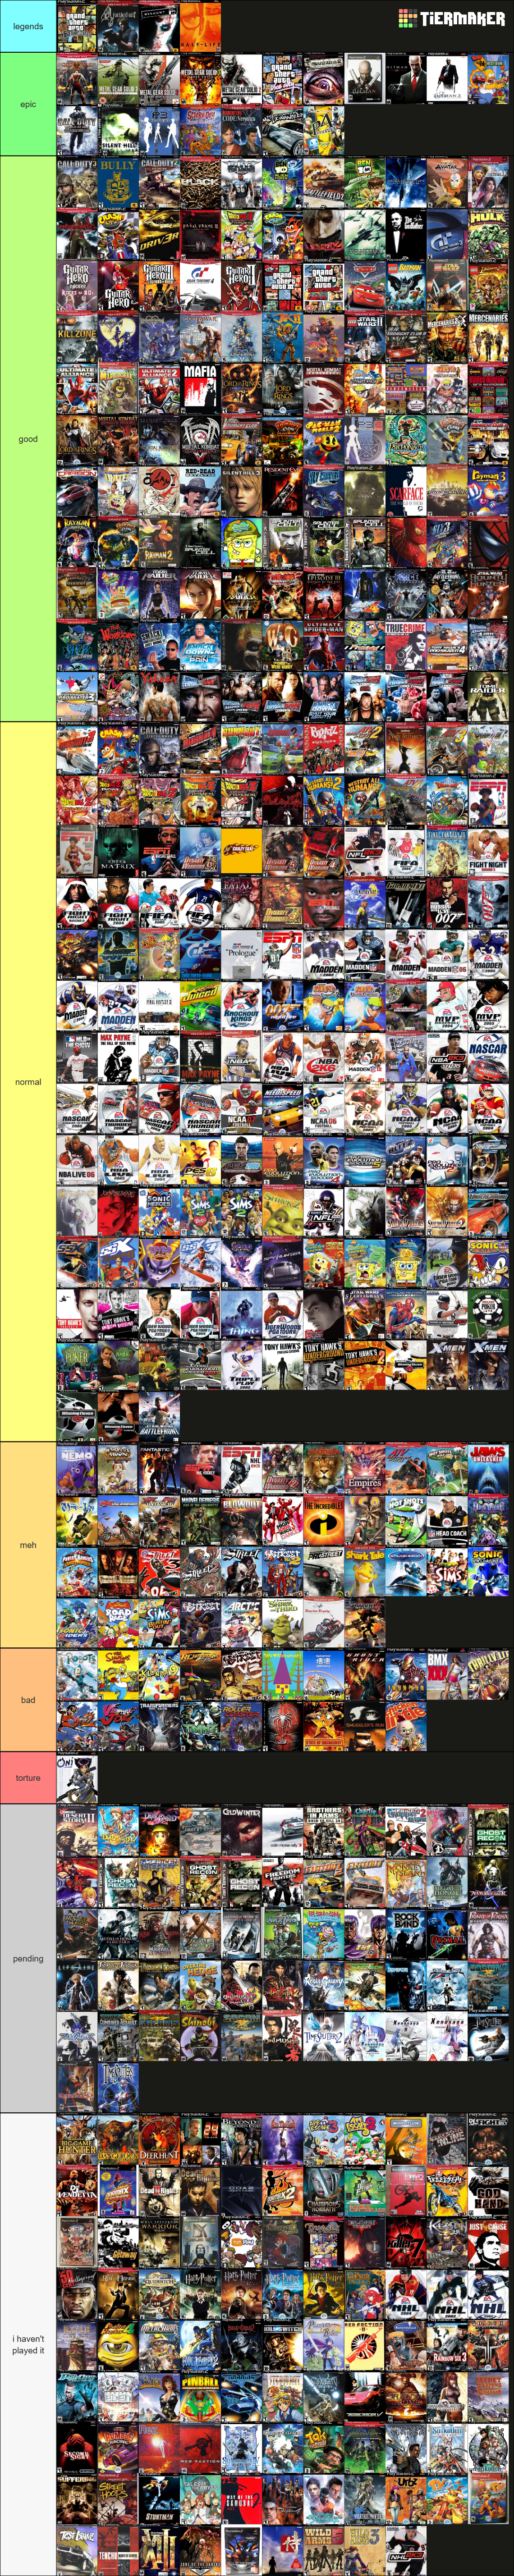 Top 200 PS2 Games